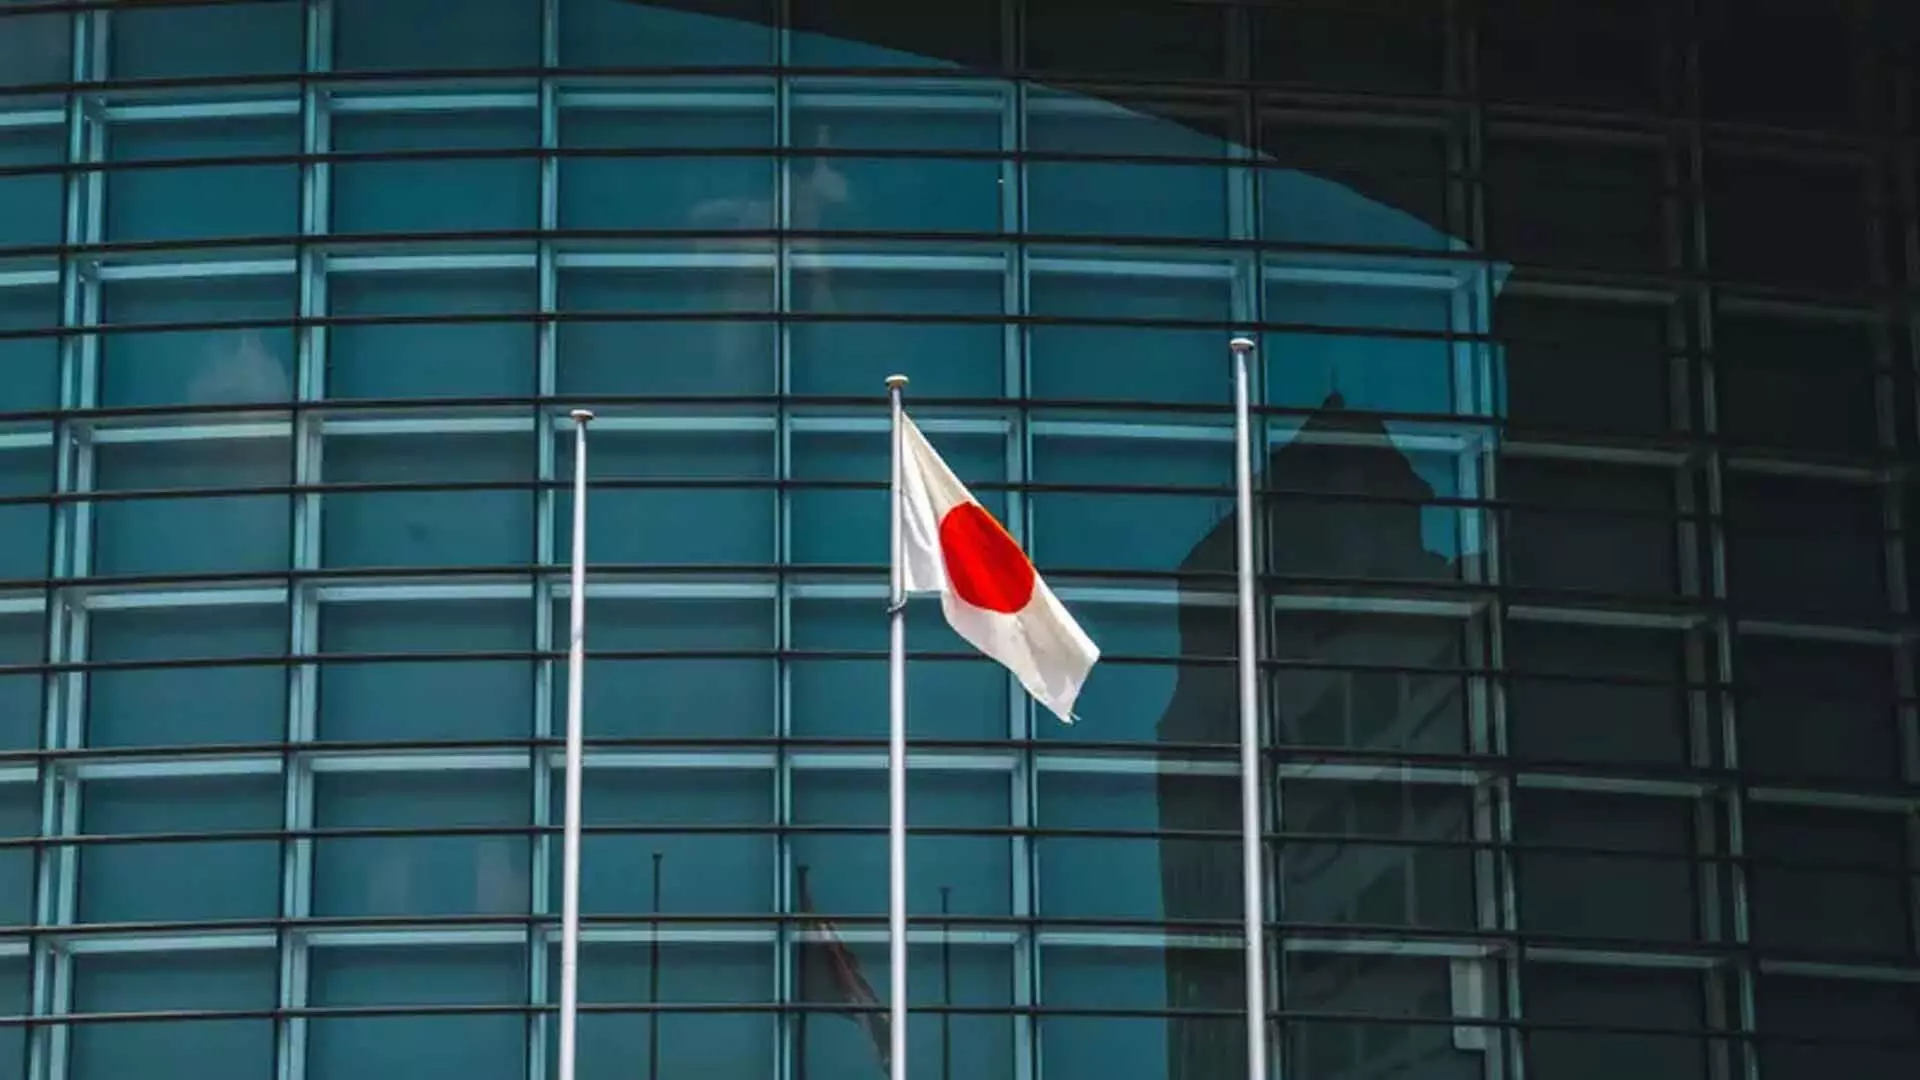 Bank of Japan ने मुद्रास्फीति के जोखिम पर बहस करते हुए आक्रामक रुख अपनाया